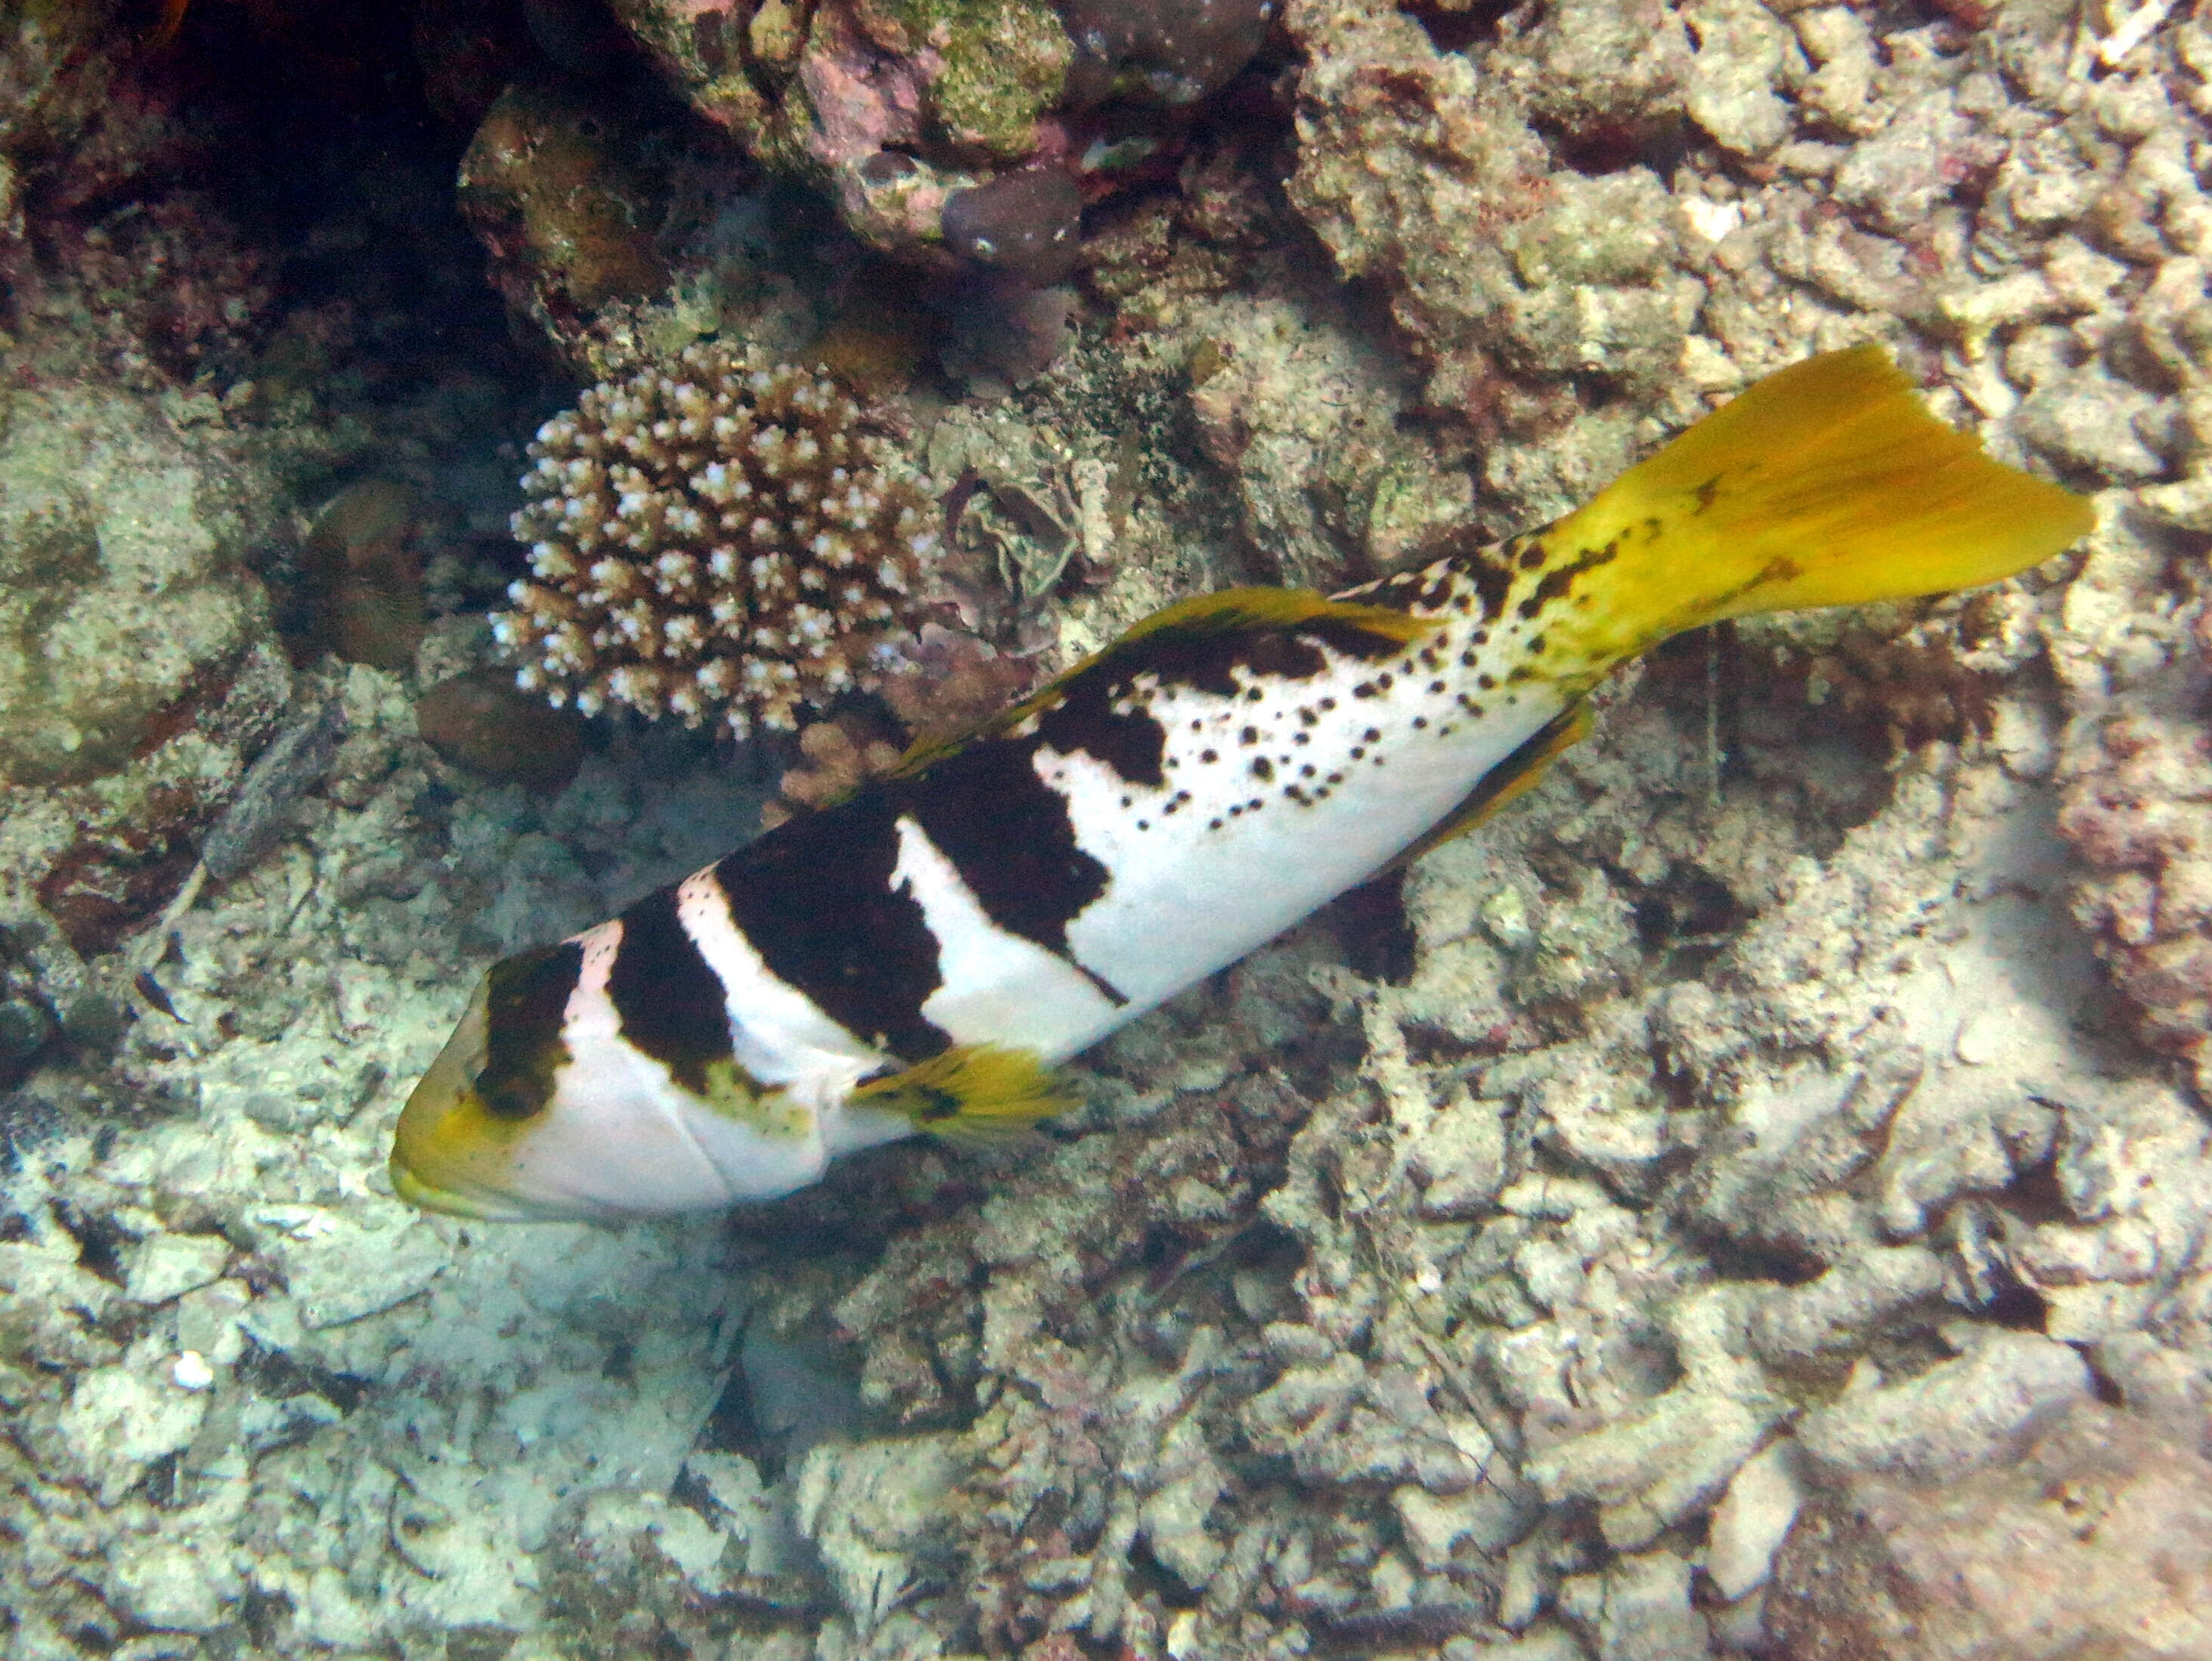 Image of Blacksaddled Coral Grouper